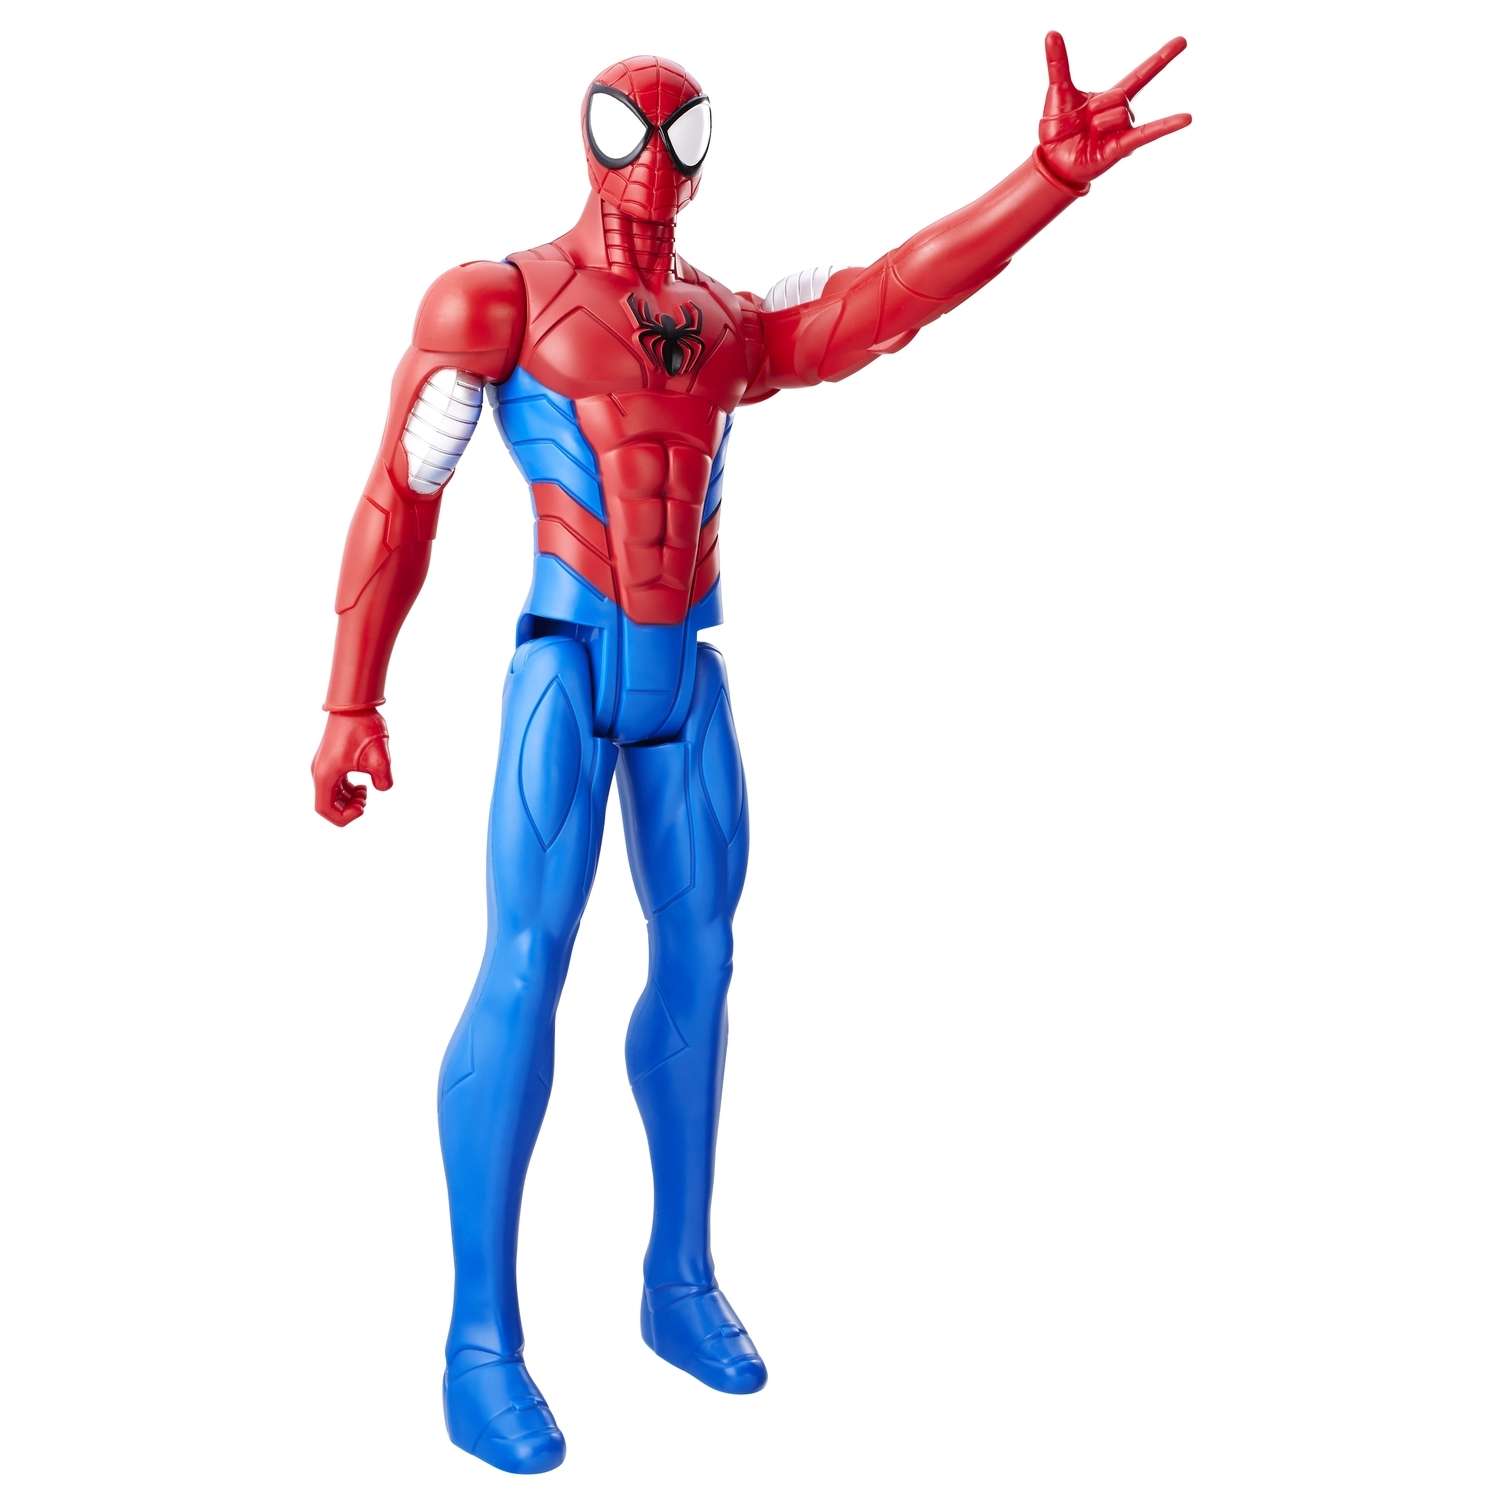 Фигурка-титан Человек-Паук (Spider-man) Вооруженного Человека-паука: Паутинные бойцы (C0019EU40) - фото 1